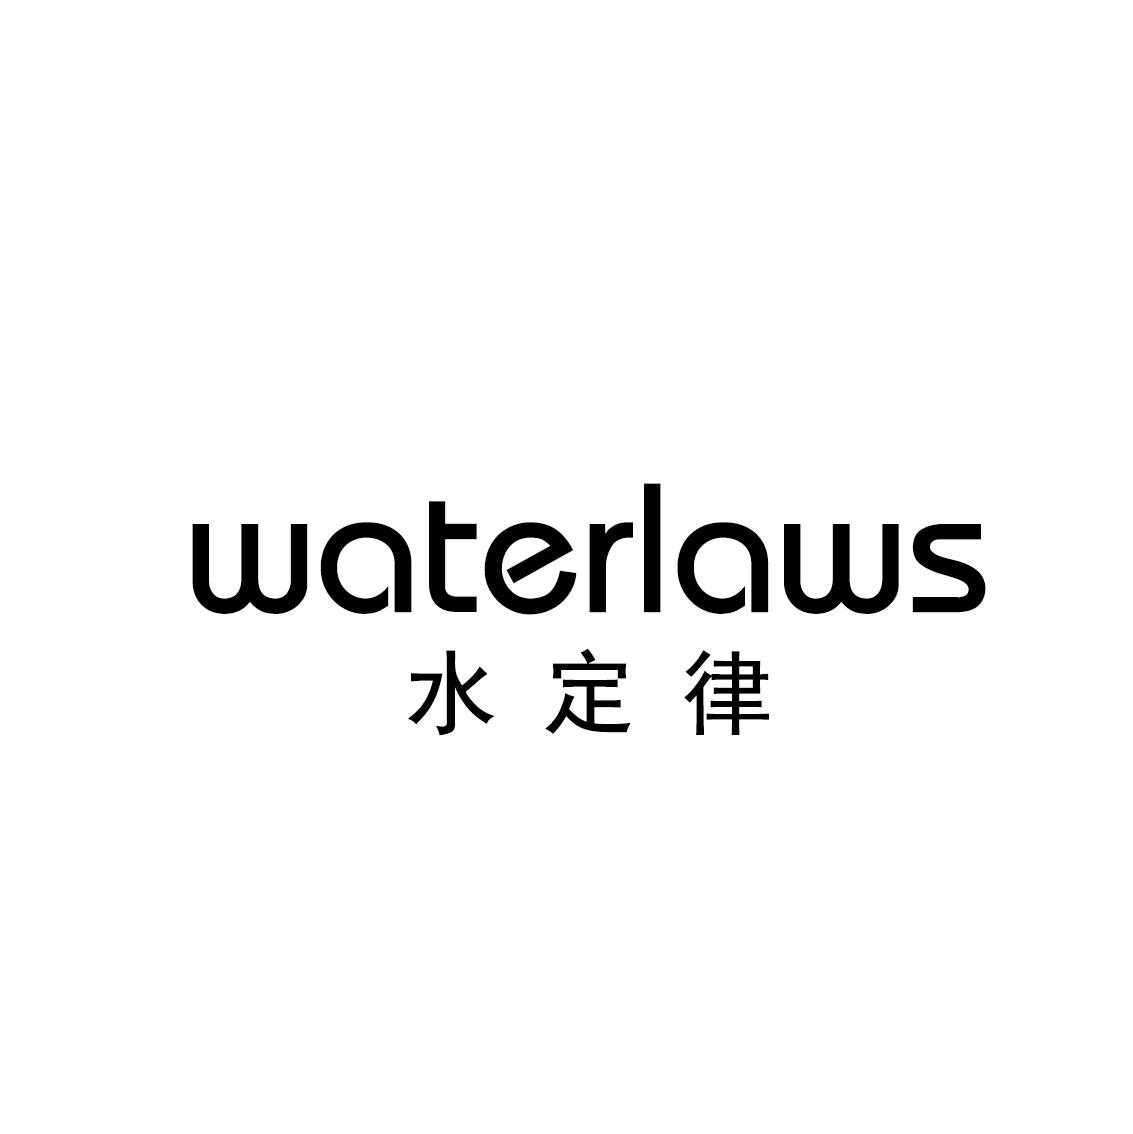 水定律 WATERLAWS